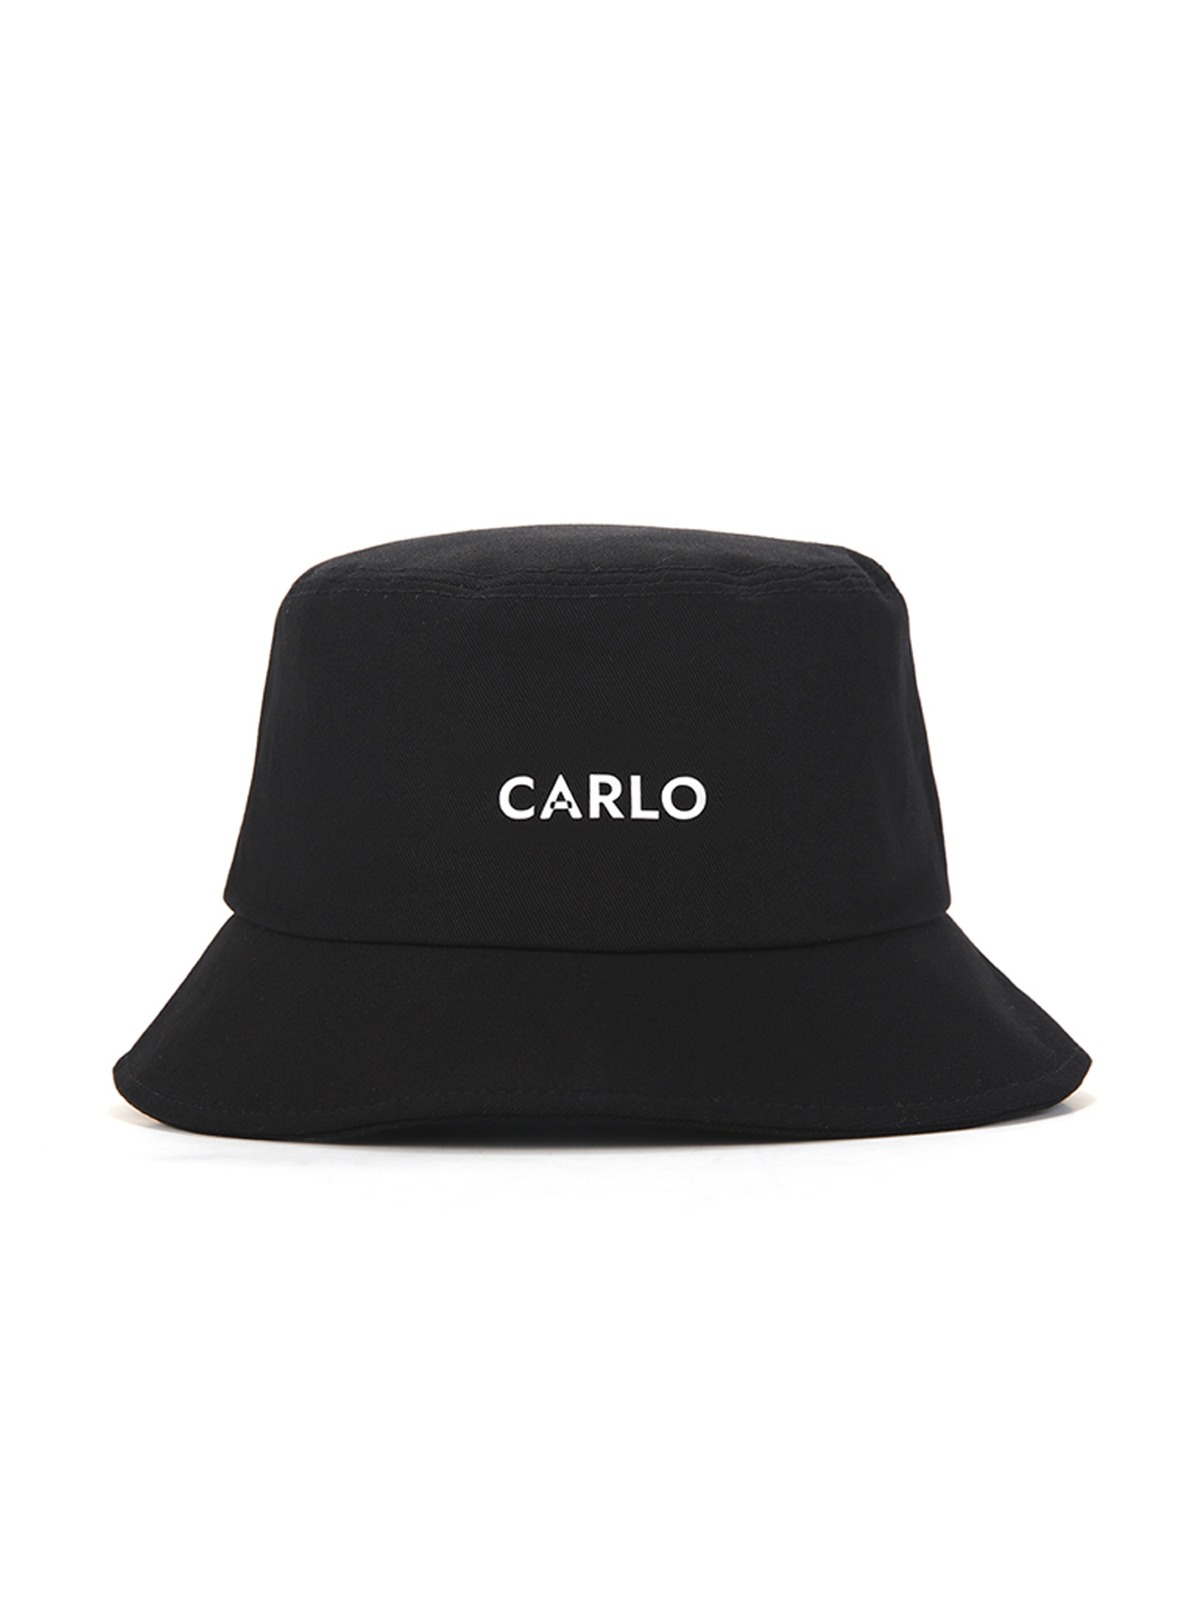 CARLO bucket hat